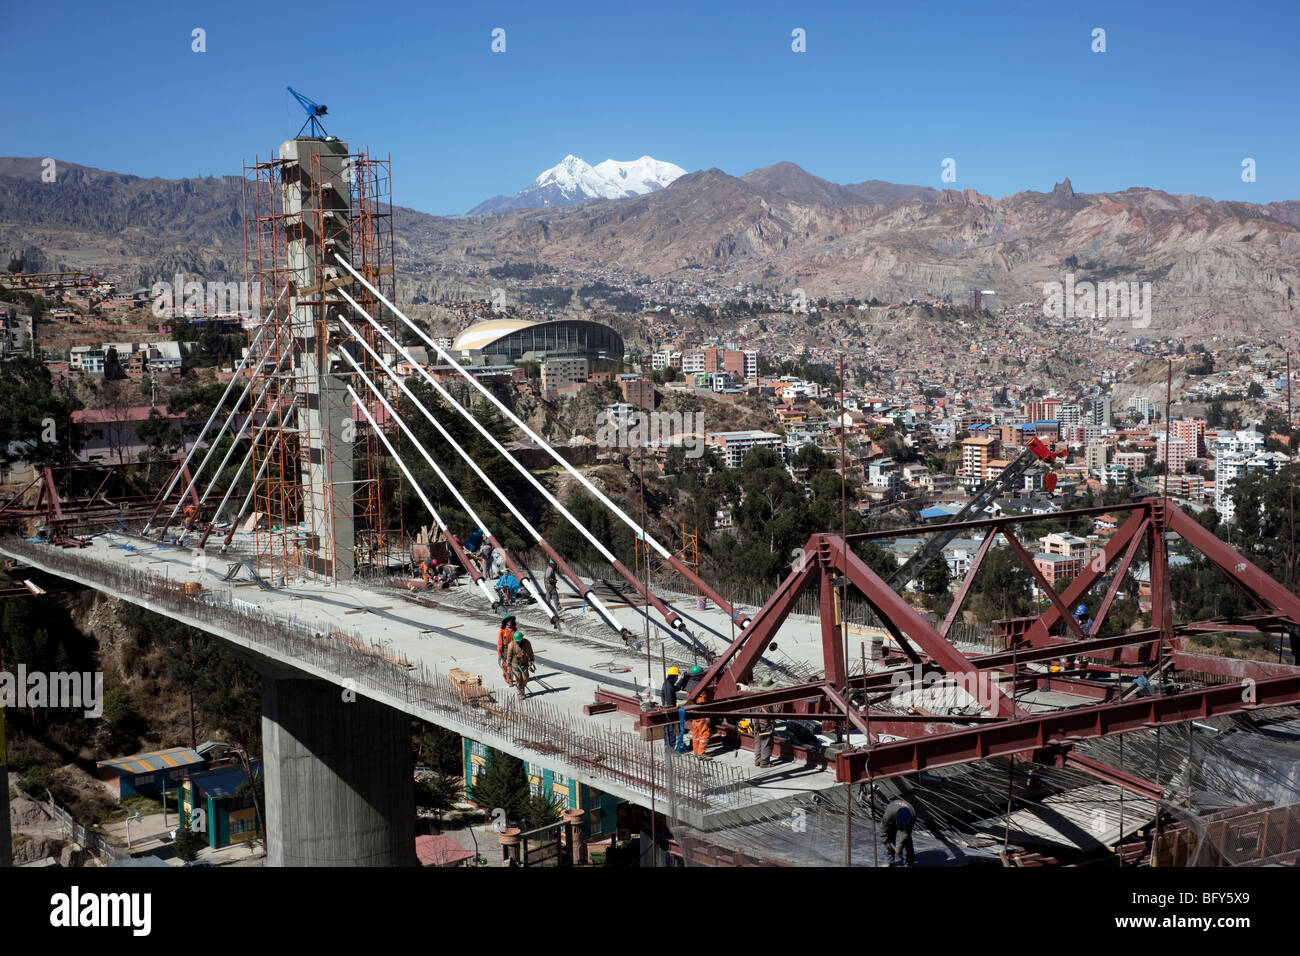 Puente de los Trillizos cable-stayed bridge construction site above Av Kantutani, Mt Illimani in background, La Paz, Bolivia Stock Photo